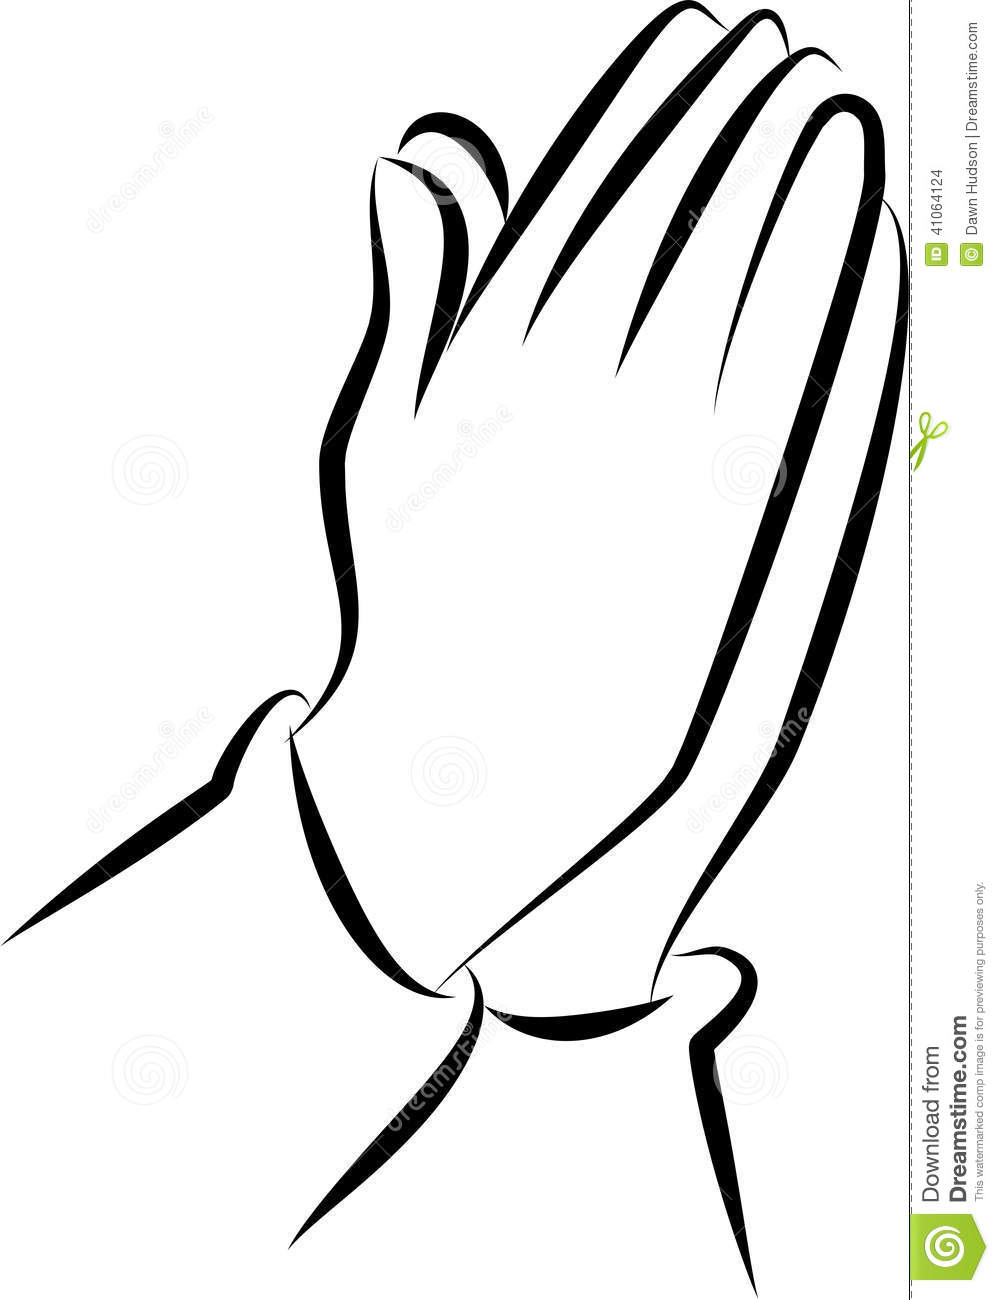 Praying hands praying hand pr